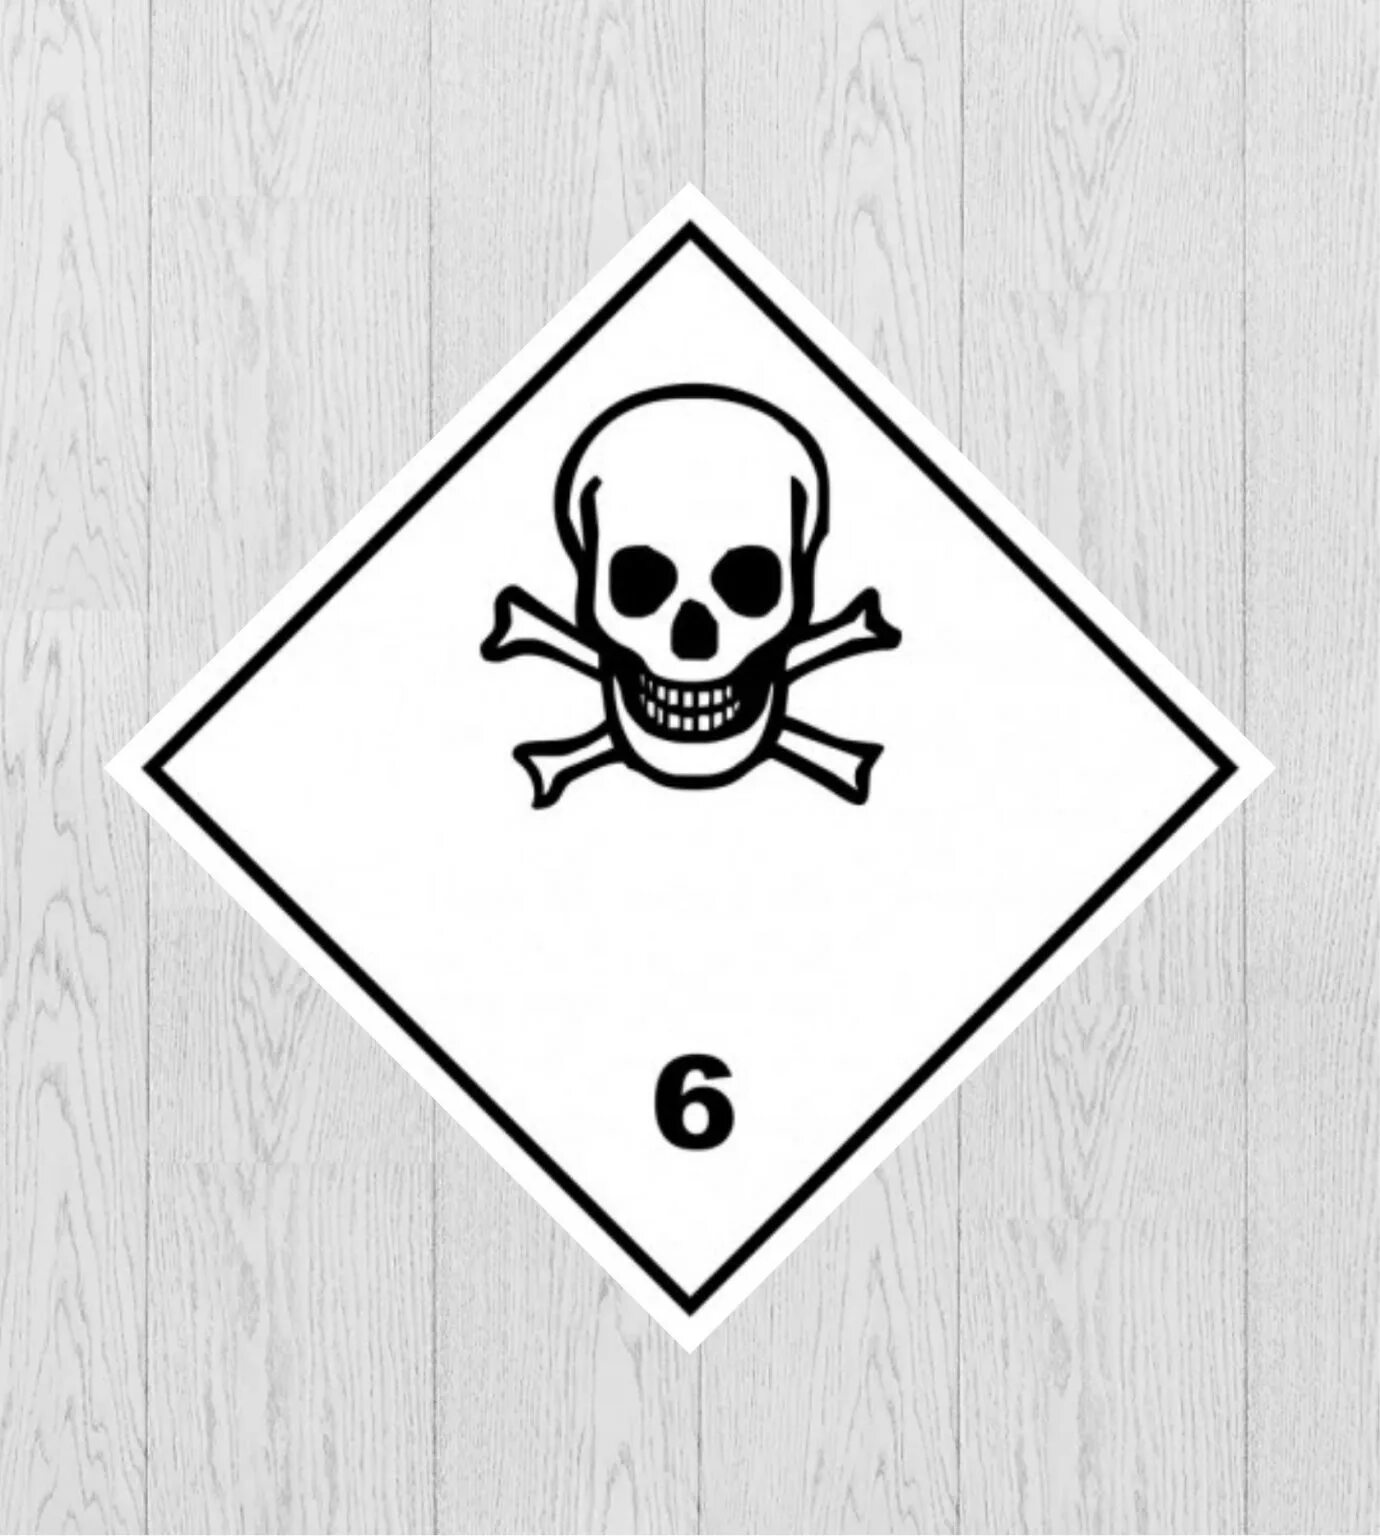 Опасный груз 6. Класс 6 опасные грузы токсические вещества знак. Знак опасности 6.1 ДОПОГ. Знак опасности 6.1 токсичные вещества. Класс 6.1 токсичные вещества.